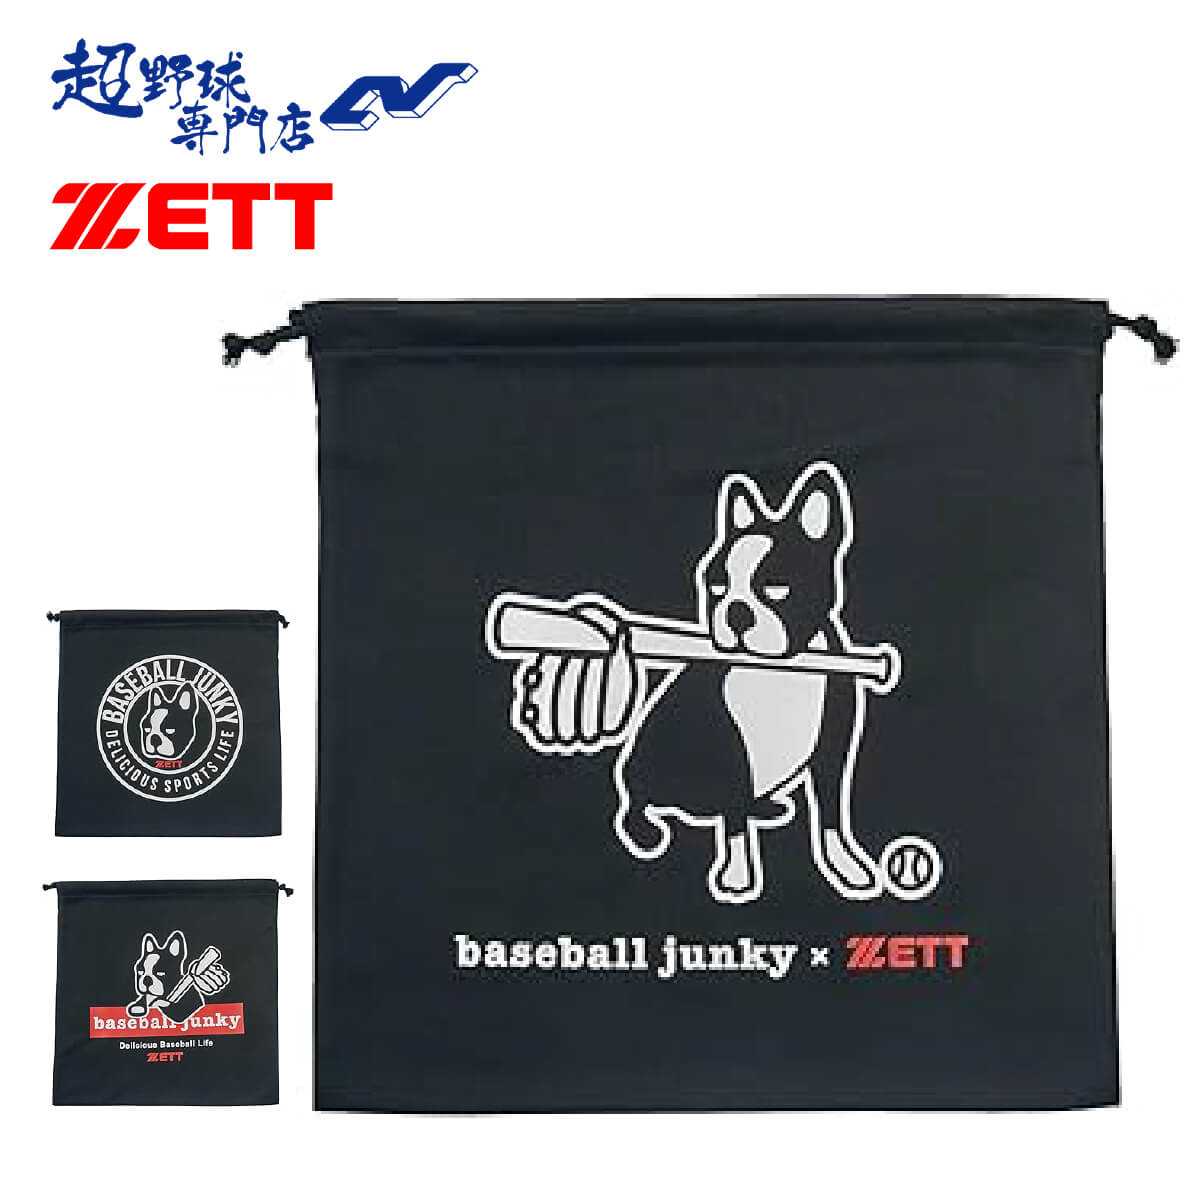 ゼット ZETT バッグ 野球 マルチバッグ BBジャンキー ニット袋 BOX69001